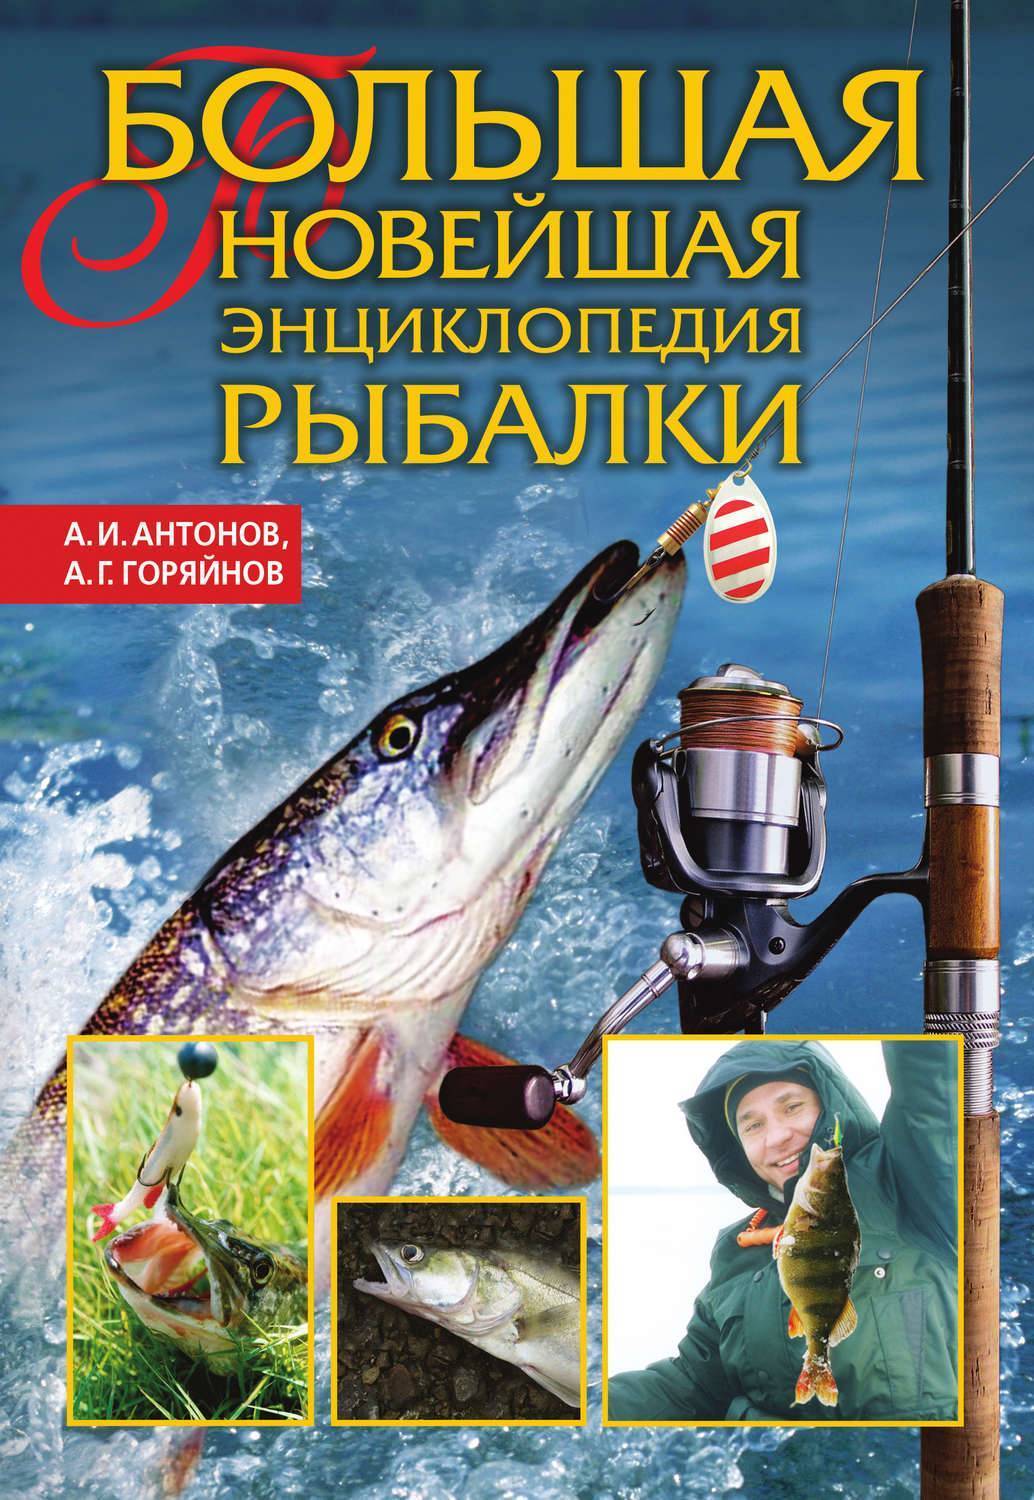 Скачать книги о рыбалке